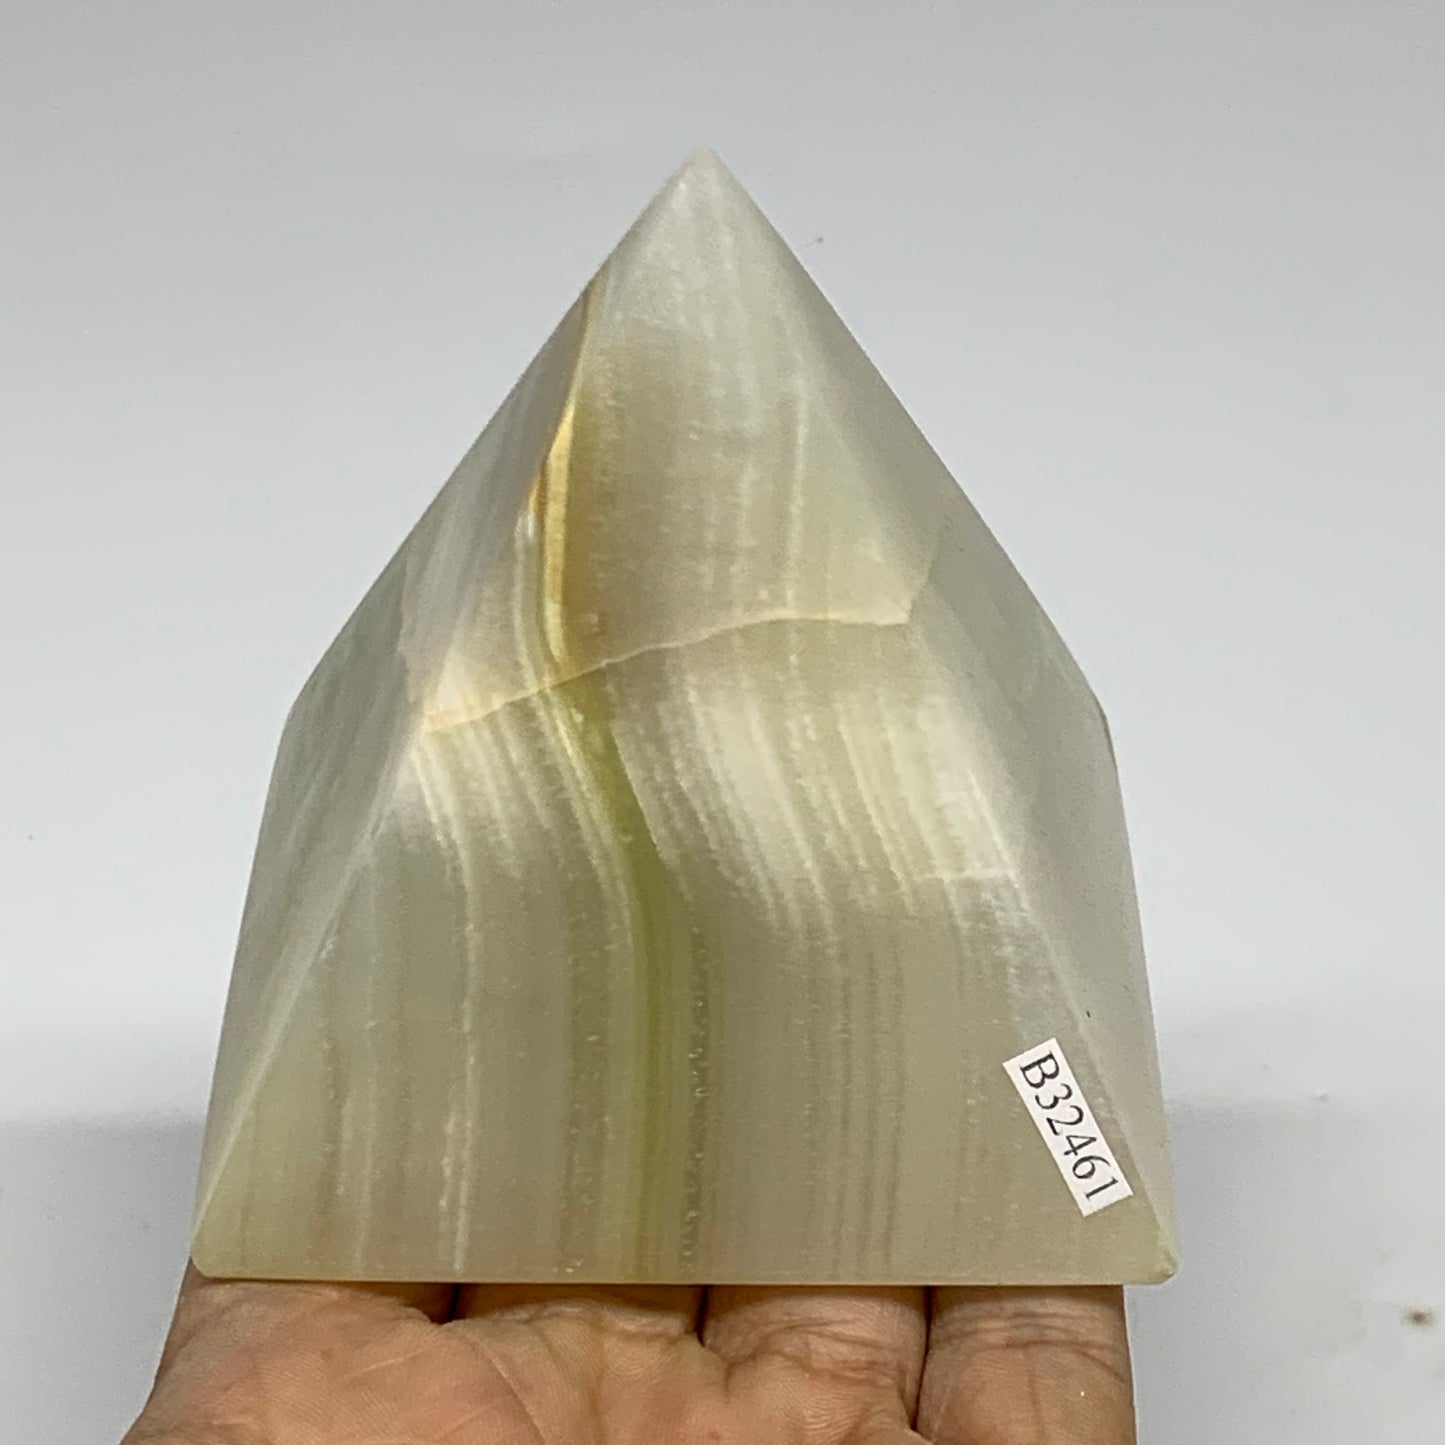 0.9 lbs, 3"x2.8"x2.8", Green Onyx Pyramid Gemstone Crystal, B32461